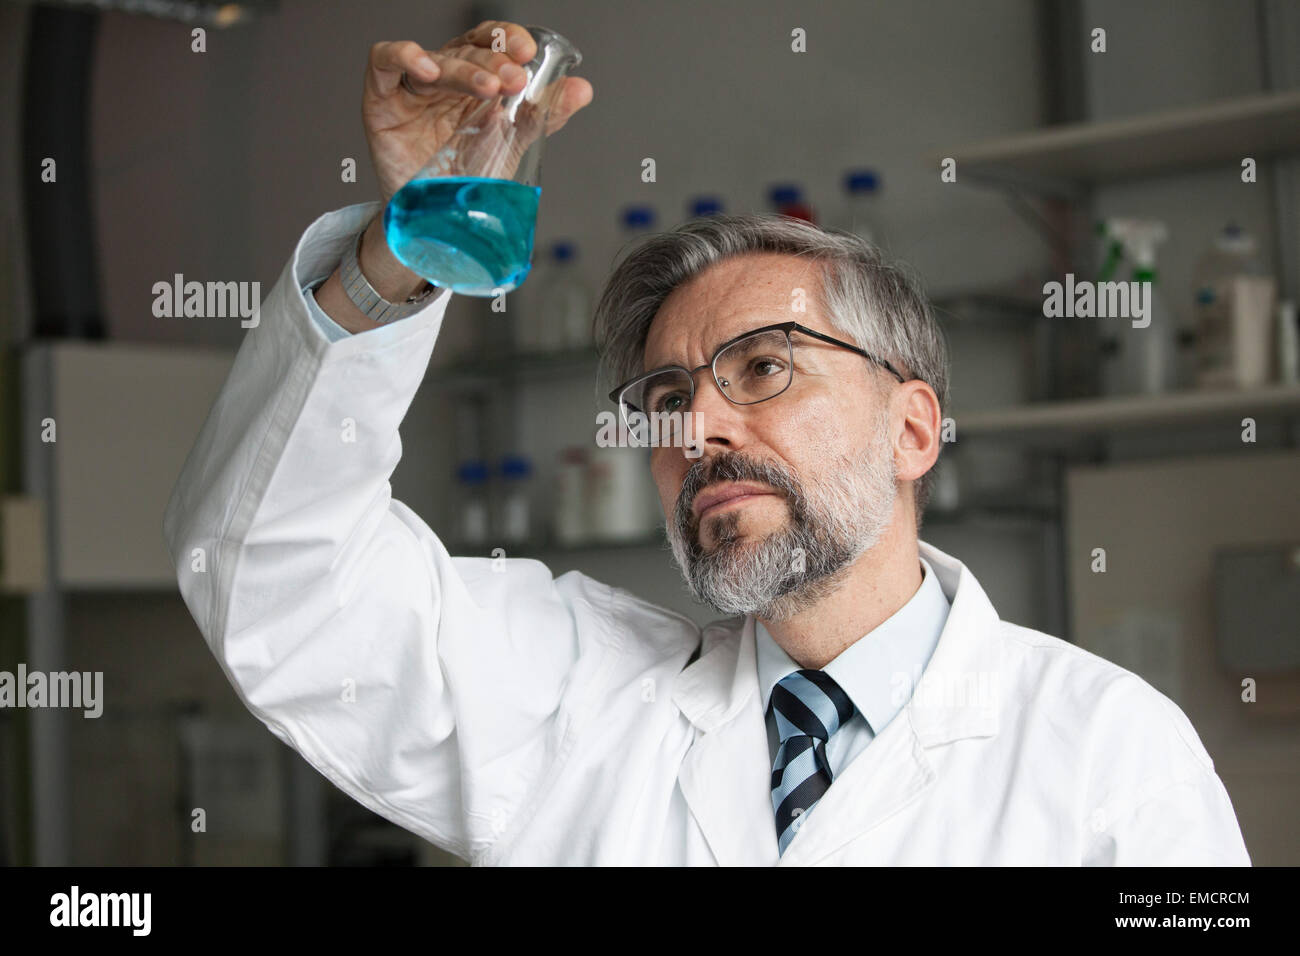 Wissenschaftler im Labor untersuchen Flüssigkeit im Erlenmeyerkolben Stockfoto